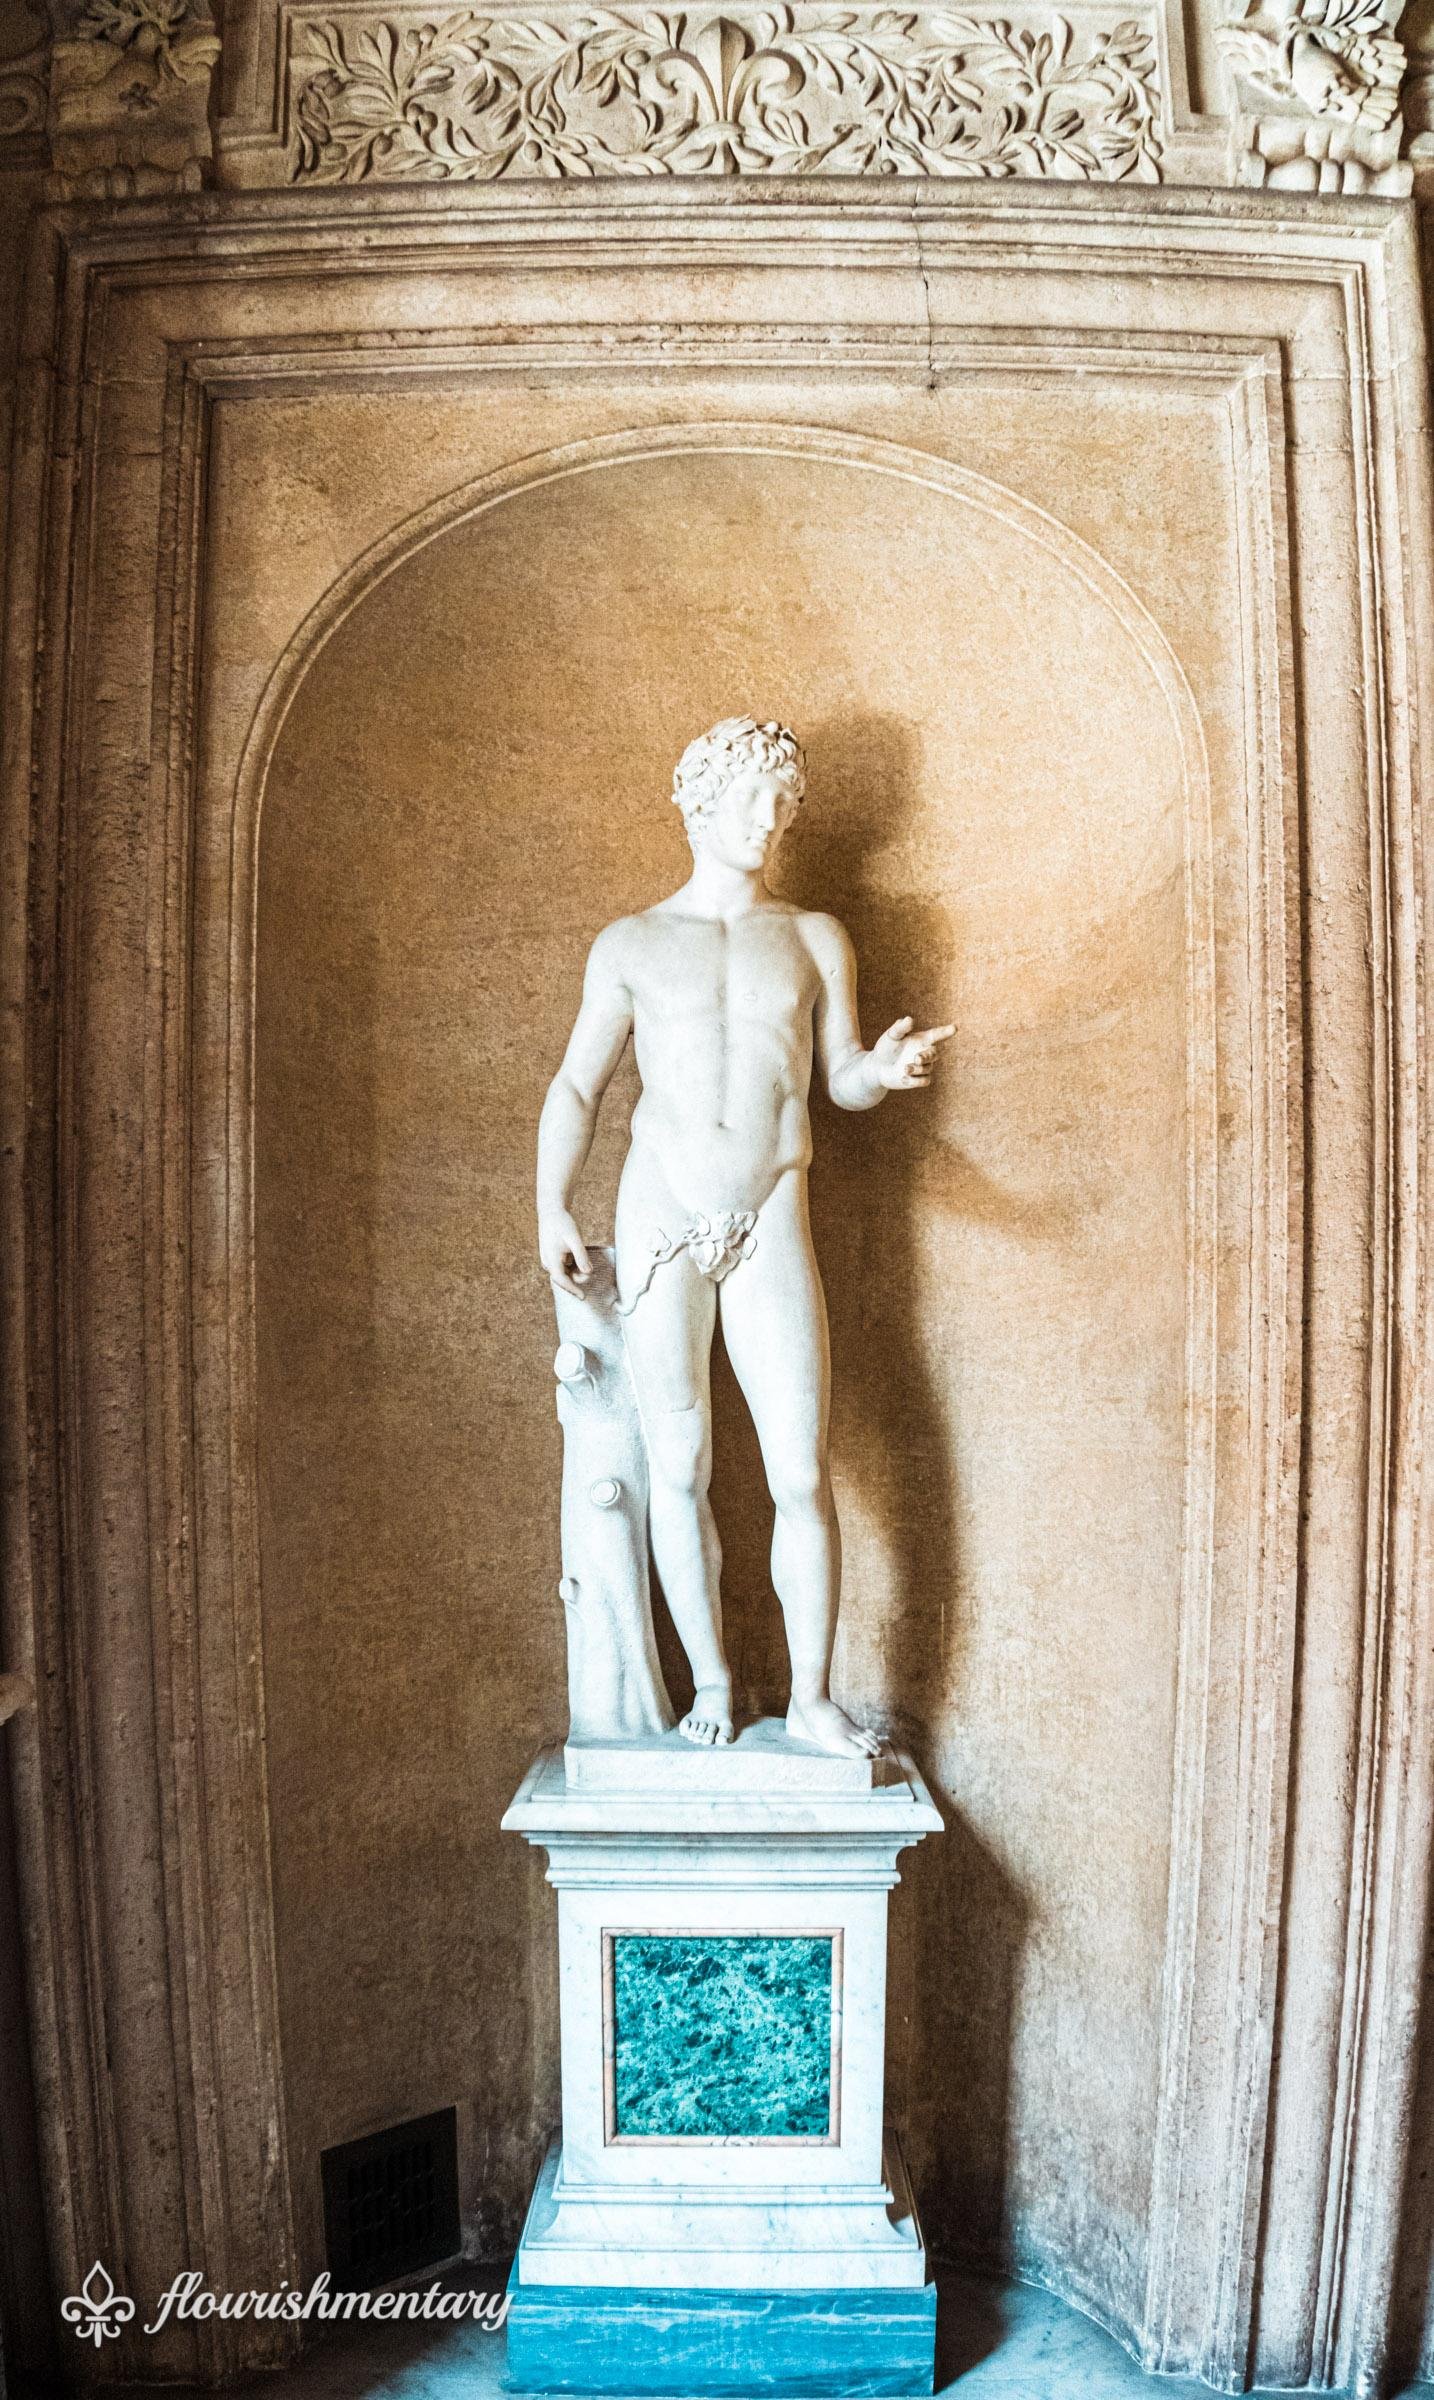 Galleria Doria Pamphilj statue